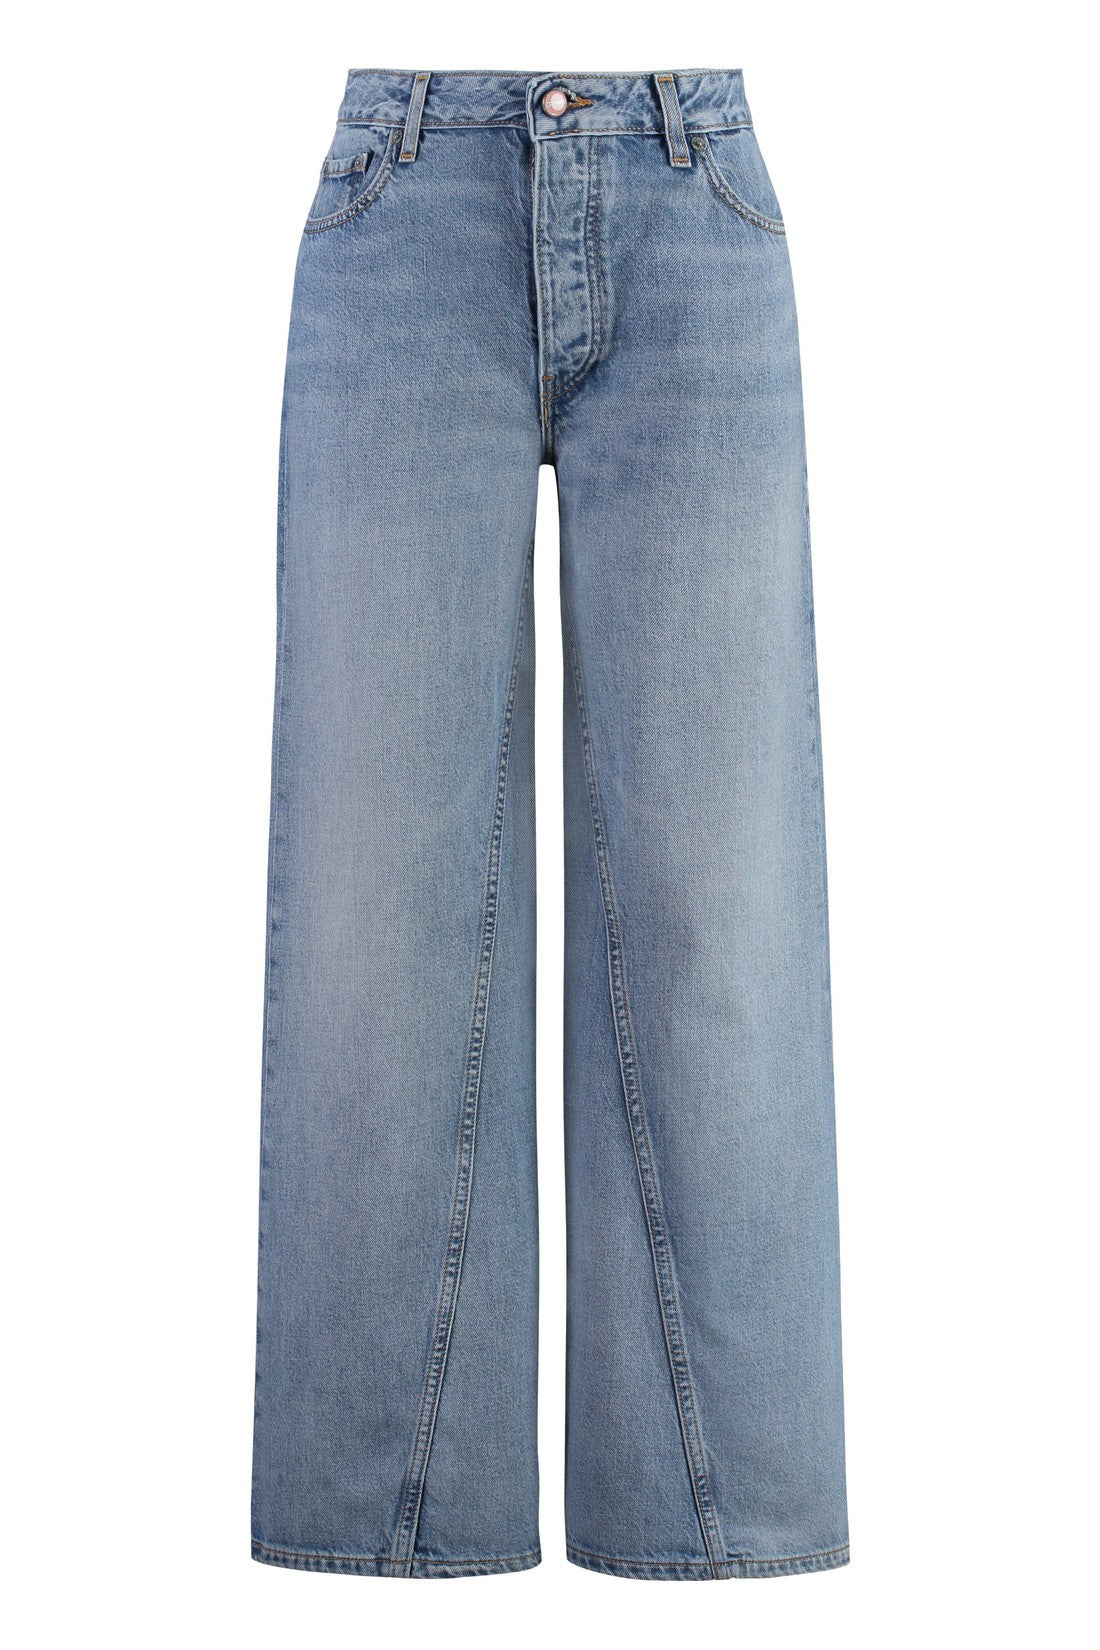 GANNI-OUTLET-SALE-Jozey Wide-leg jeans-ARCHIVIST